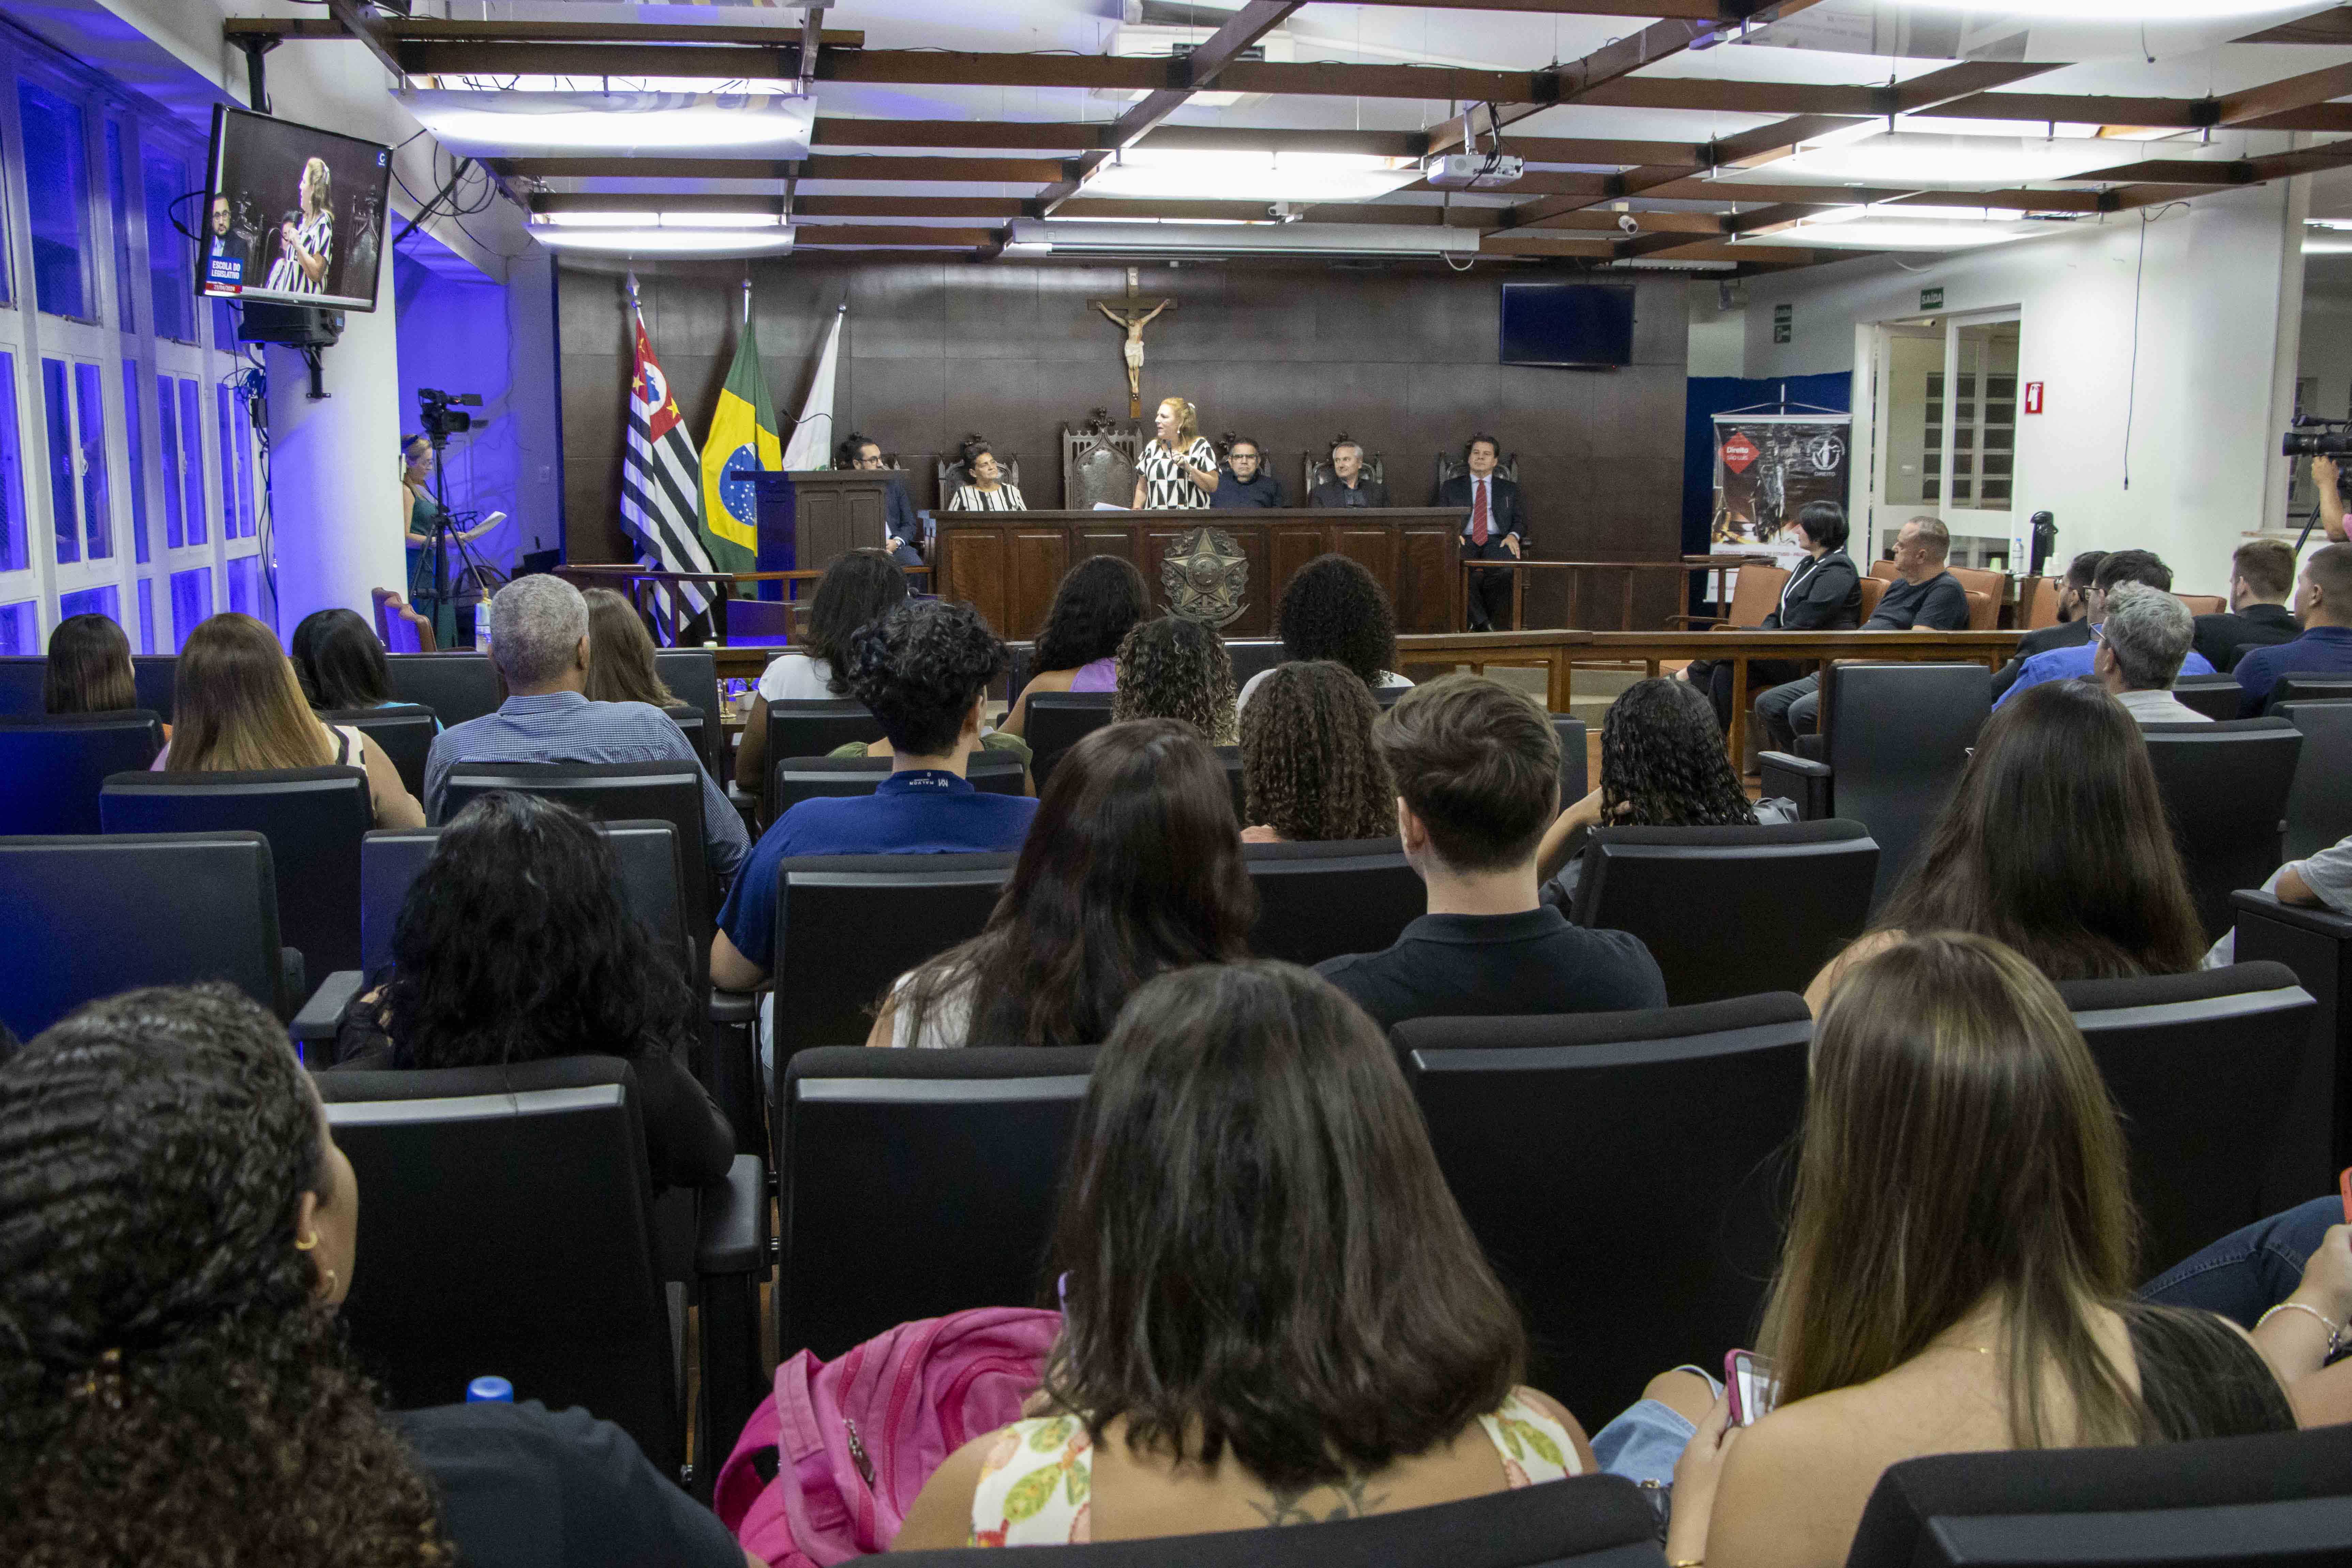 Diretora-Presidente da Faculdade São Luís, Gislene Maria Castro Martins Duarte, abre Semana Jurídica da instituição, com apoio da Escola do Legislativo da Câmara Municipal de Jaboticabal e ACIAJA.